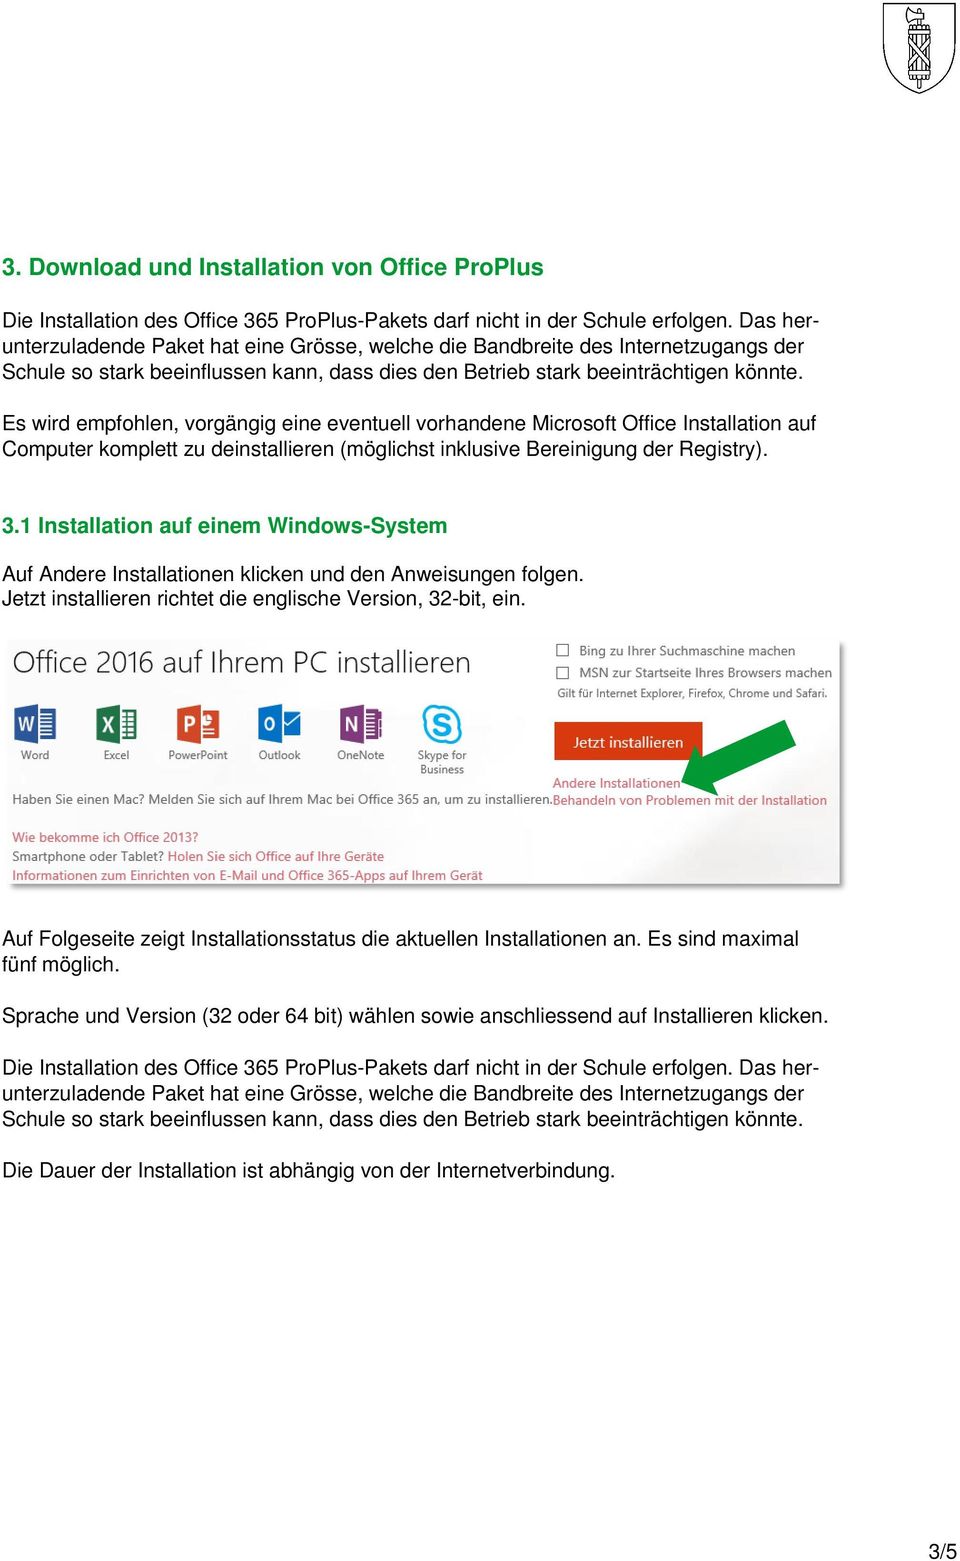 Es wird empfohlen, vorgängig eine eventuell vorhandene Microsoft Office Installation auf Computer komplett zu deinstallieren (möglichst inklusive Bereinigung der Registry). 3.